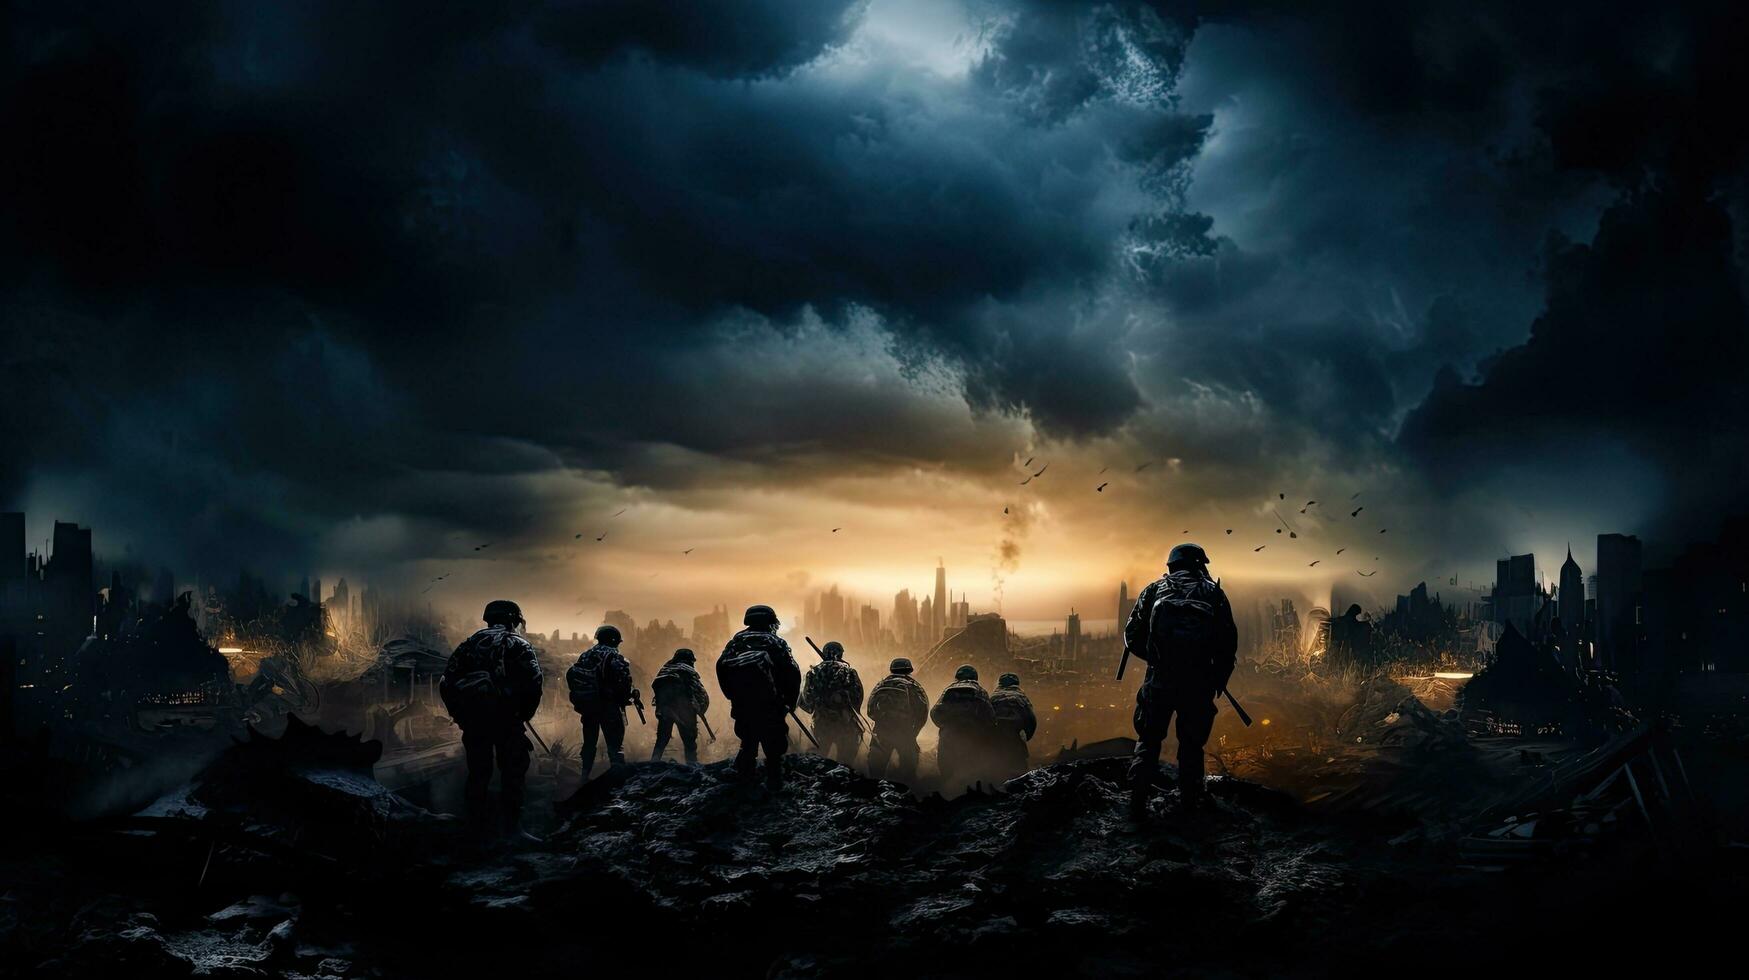 guerre scène avec silhouette soldats combat dans une ruiné ville en dessous de une nuageux ciel photo